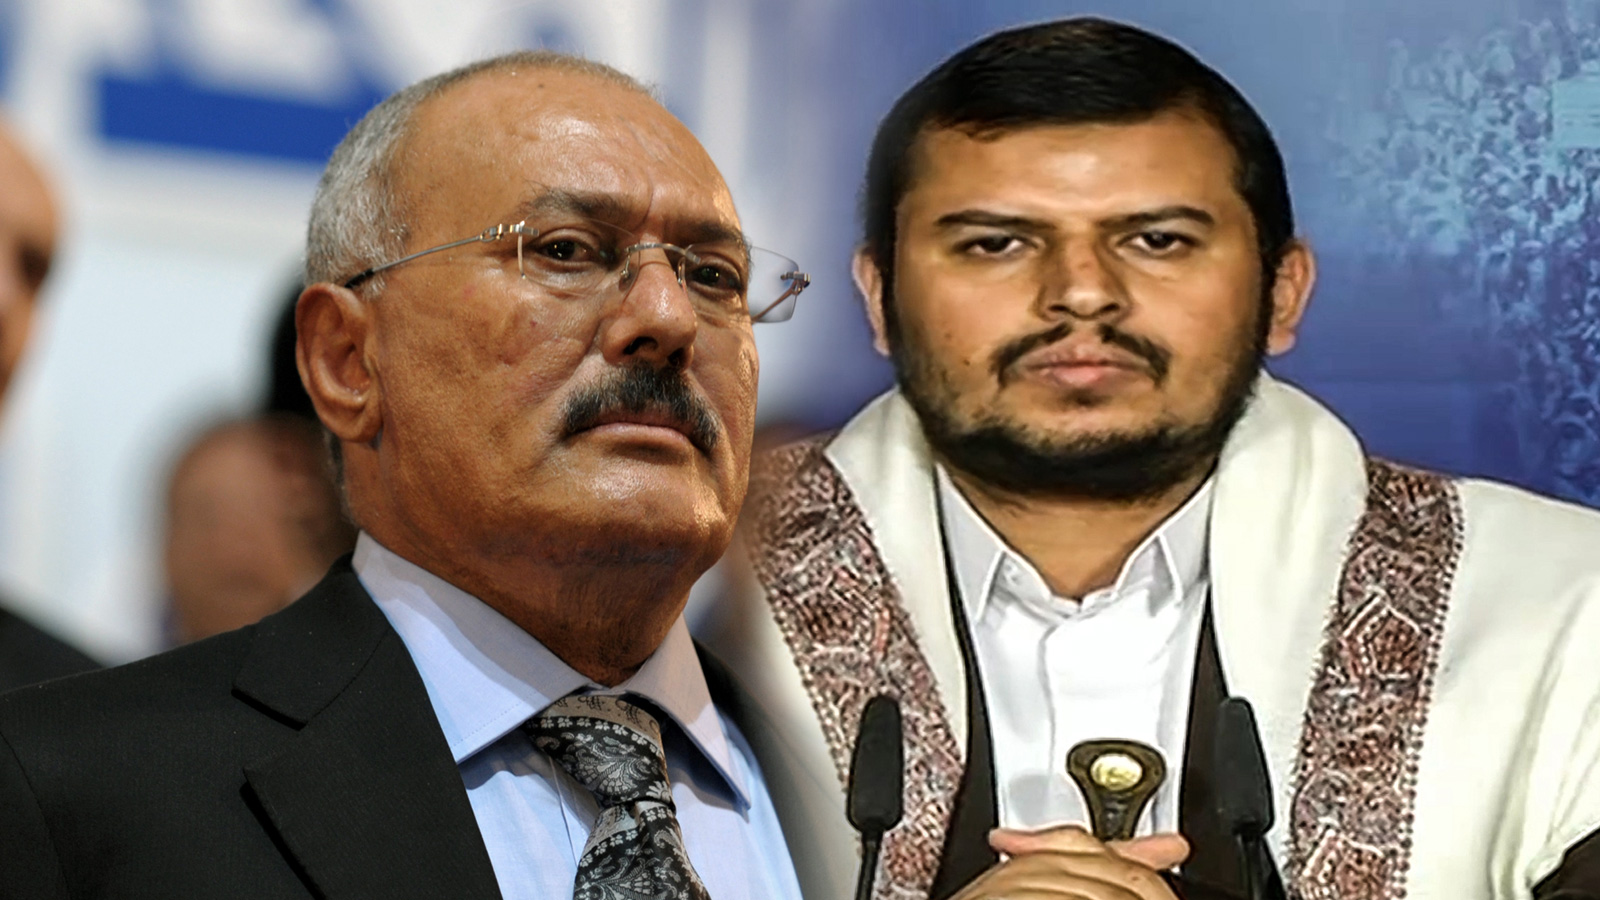 عملية السلام التي توسطت فيها الأمم المتحدة، تطالب تحالف الحوثي-صالح بعقد اتفاق مع أتباع الرئيس هادي وتشكيل حكومة 